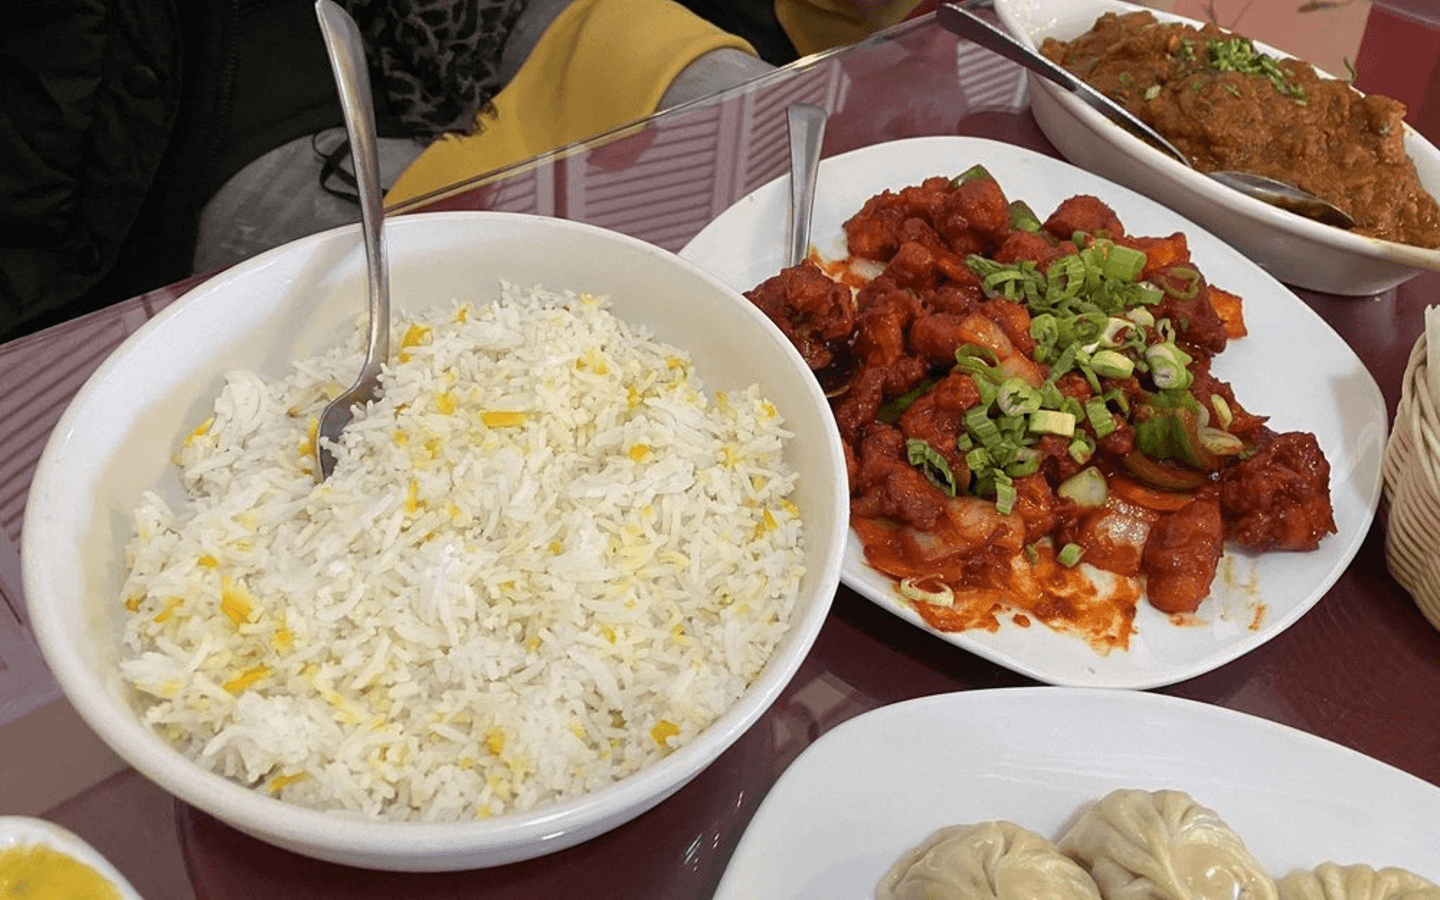 Himalayan Restaurant's Rewards